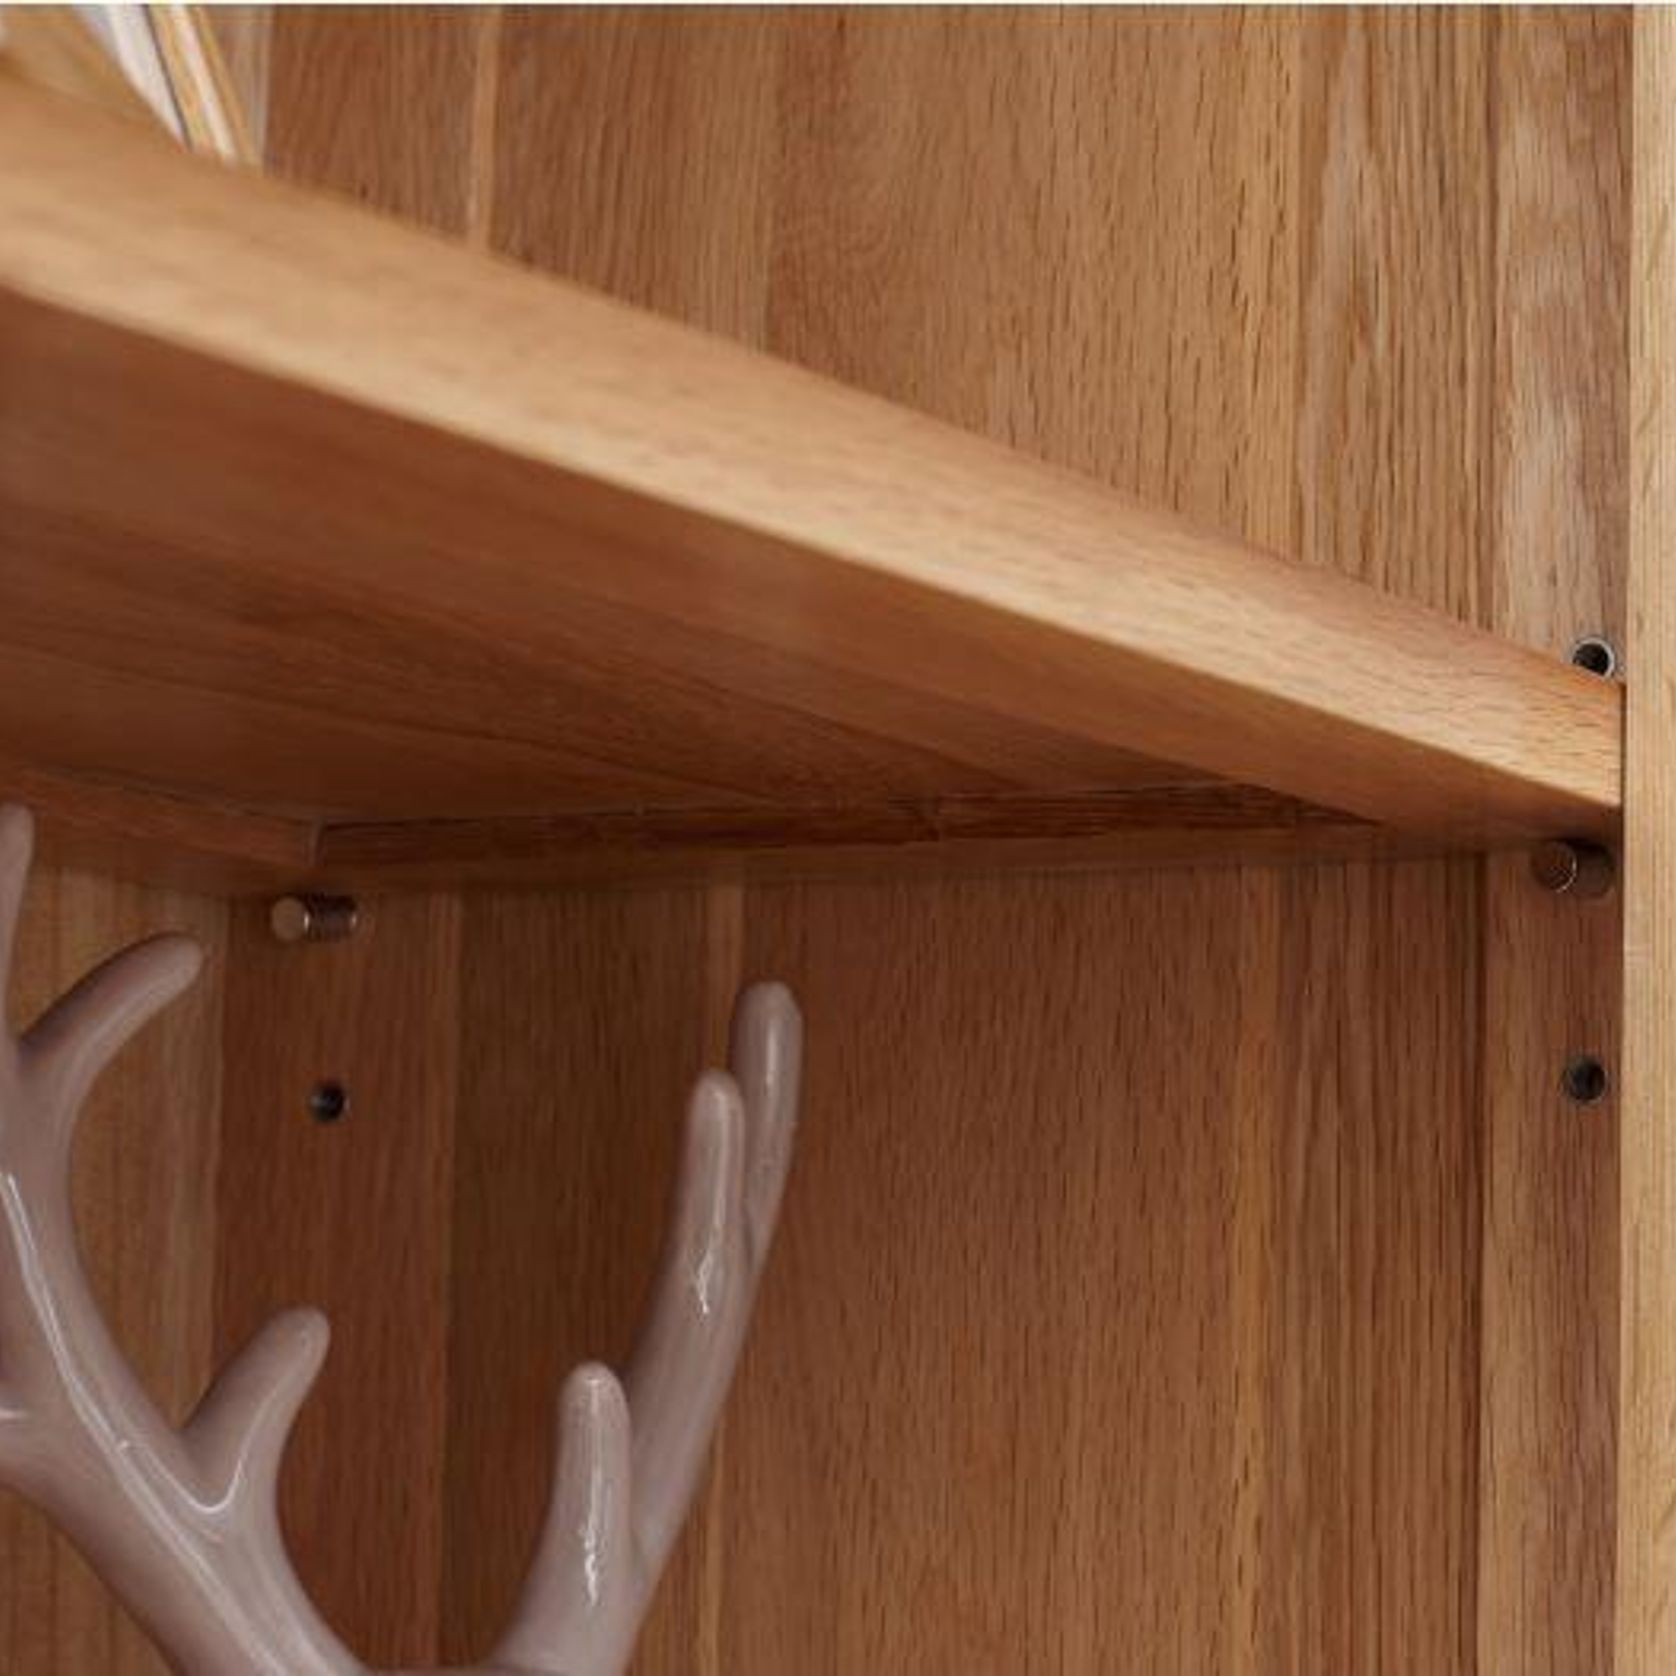 Humbie Solid Oak Slim Display Cabinet gallery detail image